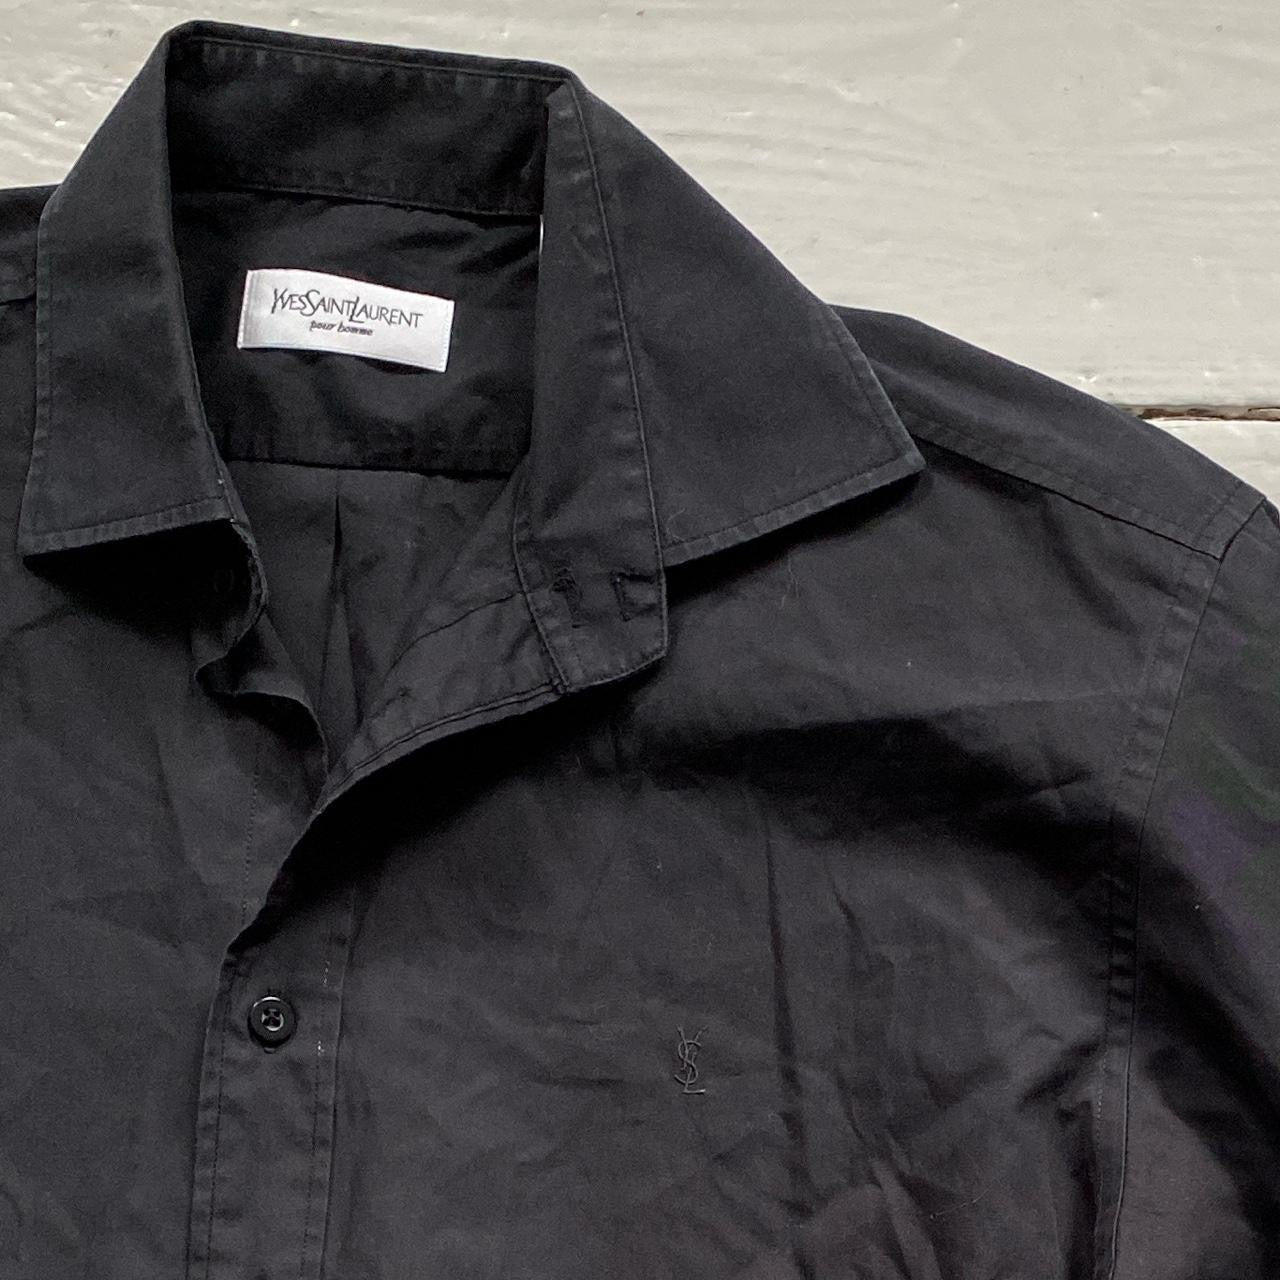 Yves Saint Laurent Black Shirt (Medium)